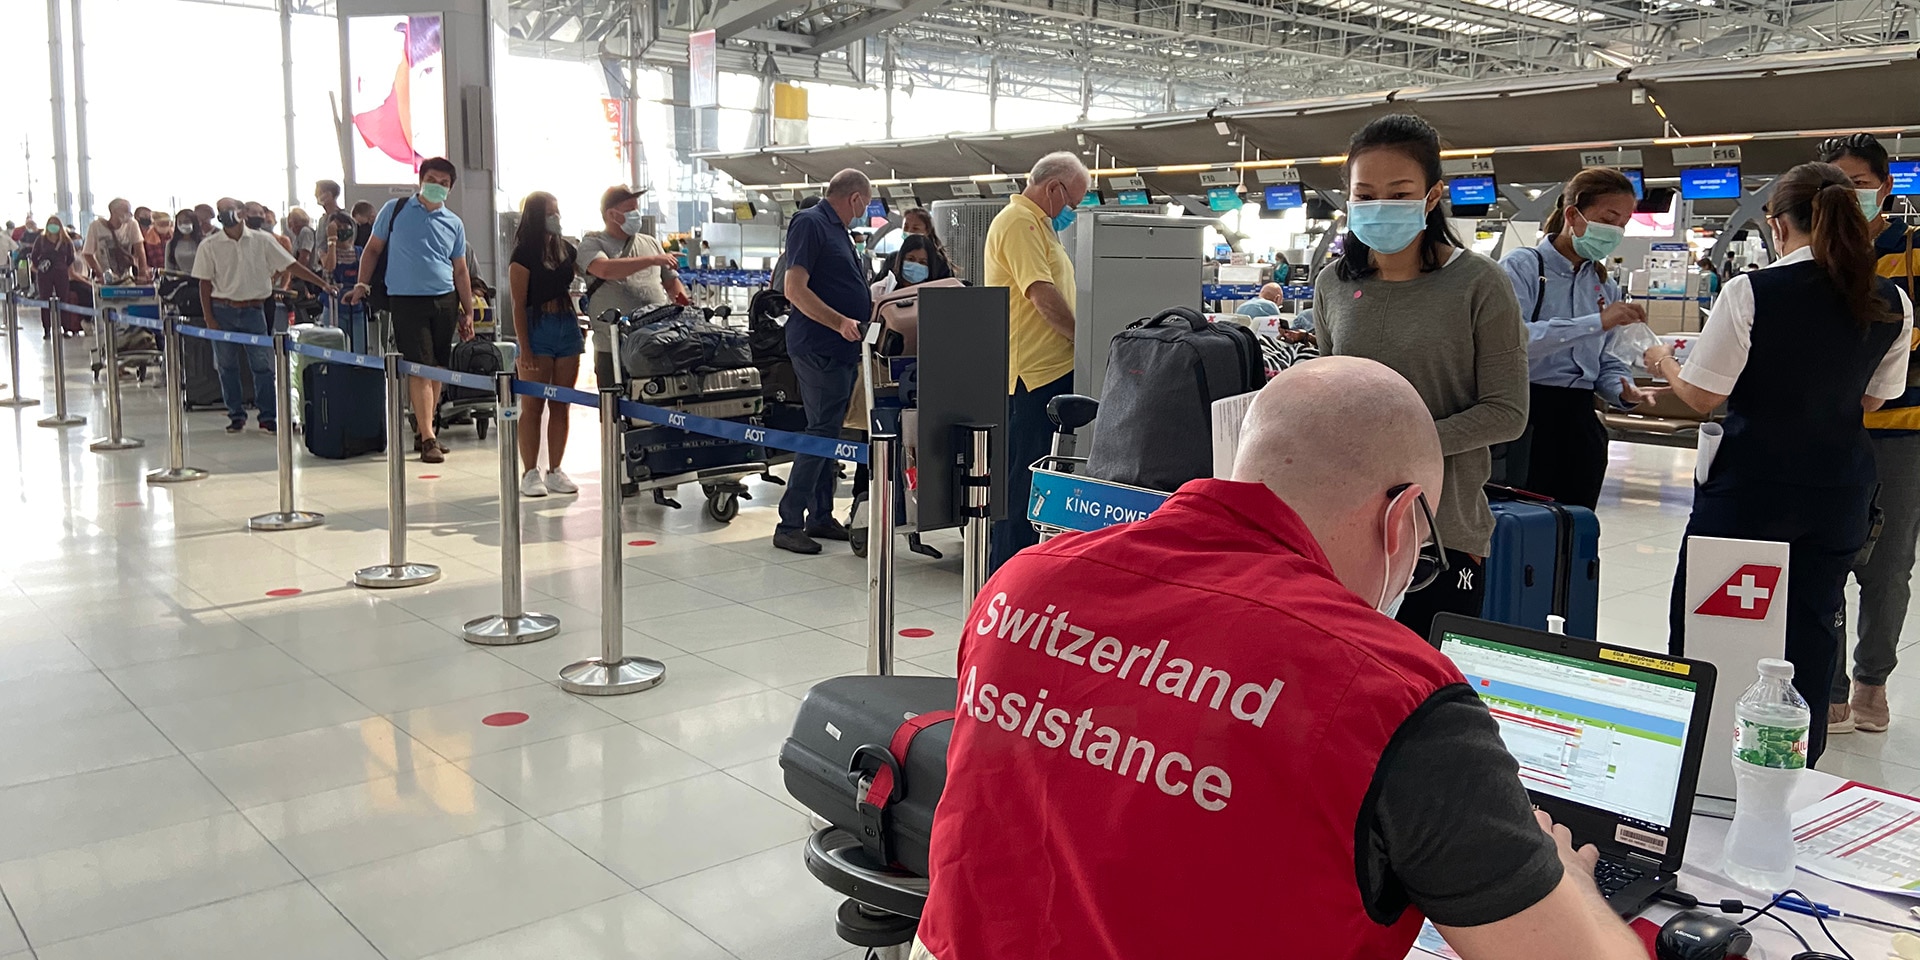 A l’aéroport de Bangkok, du personnel de l’ambassade de Suisse prête assistance aux voyageurs enregistrés sur le vol Bangkok-Zurich.